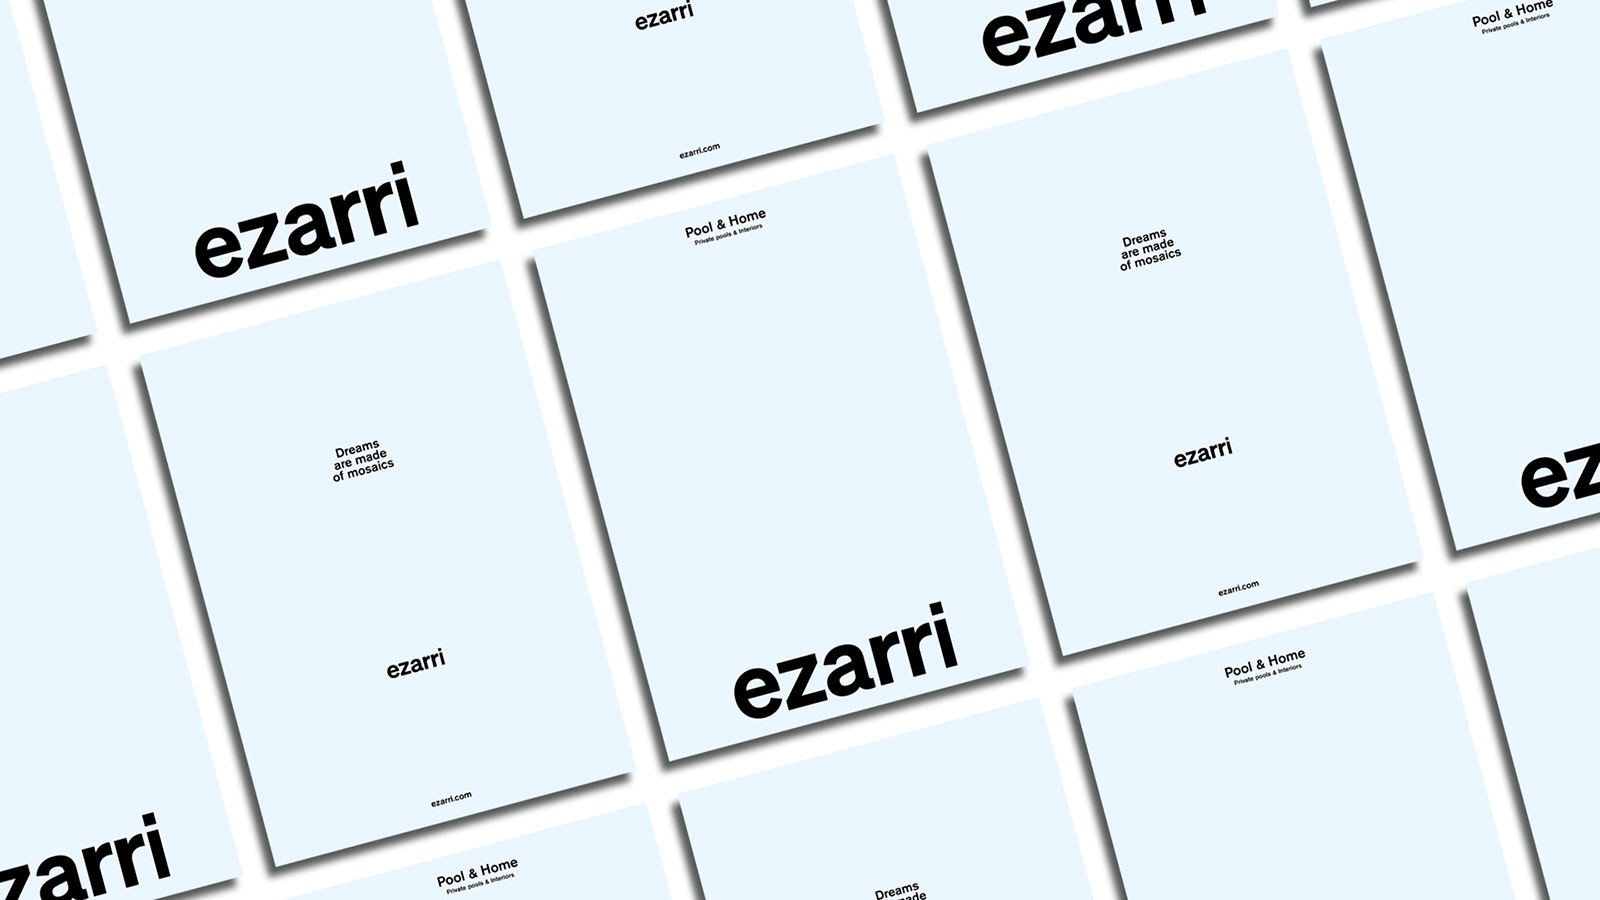 Ezarri_New_Pool&Home_Catalogue